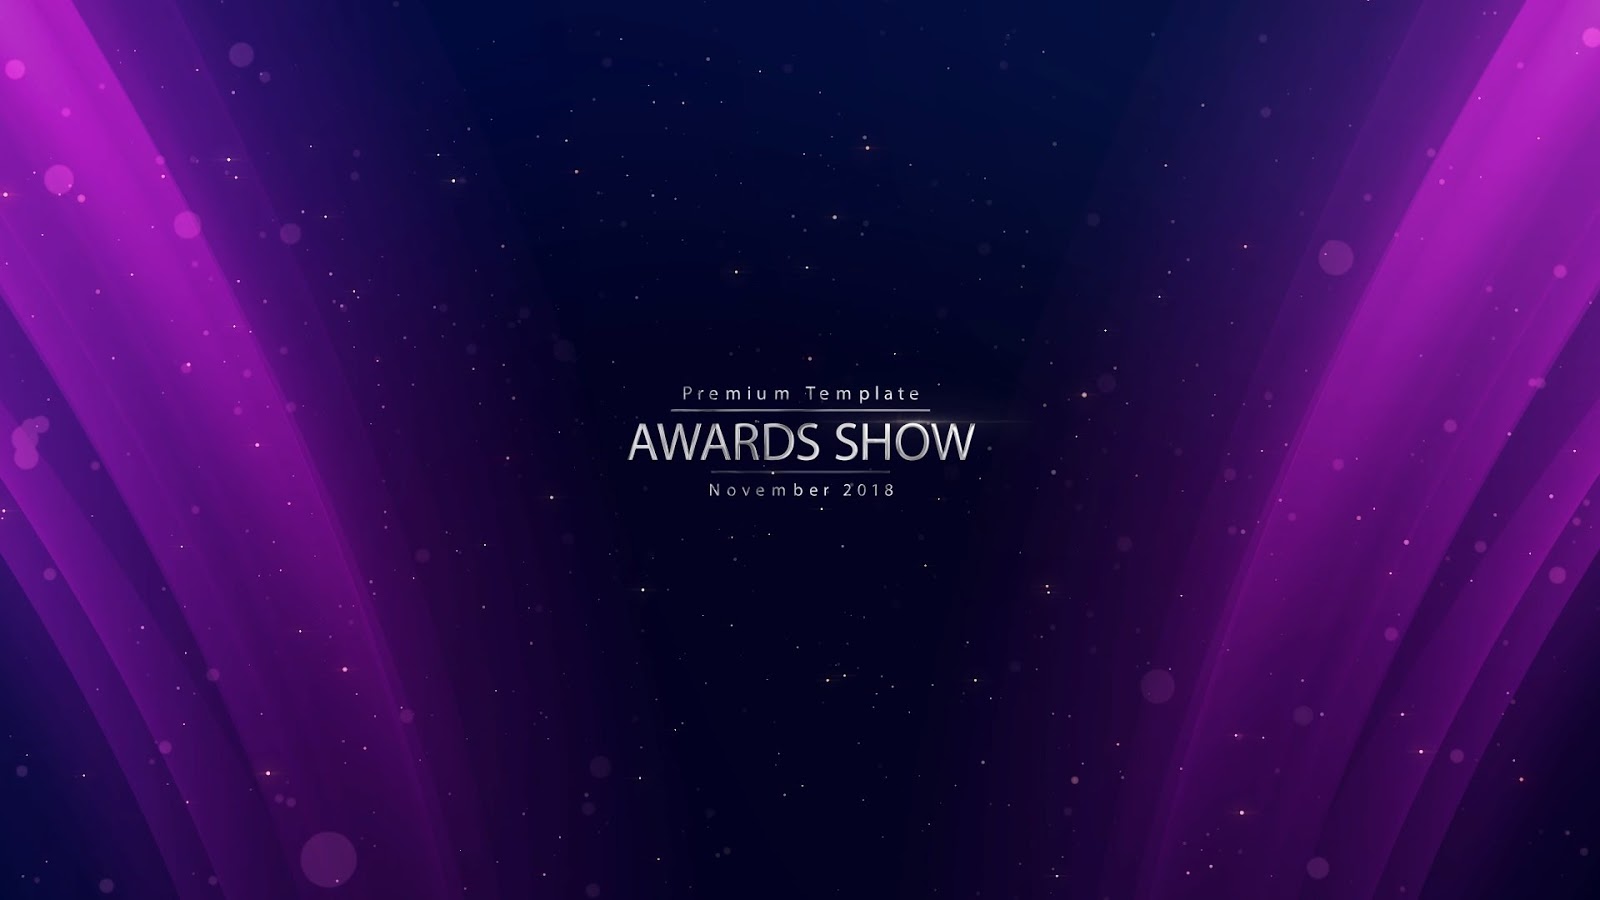  Awards Show 